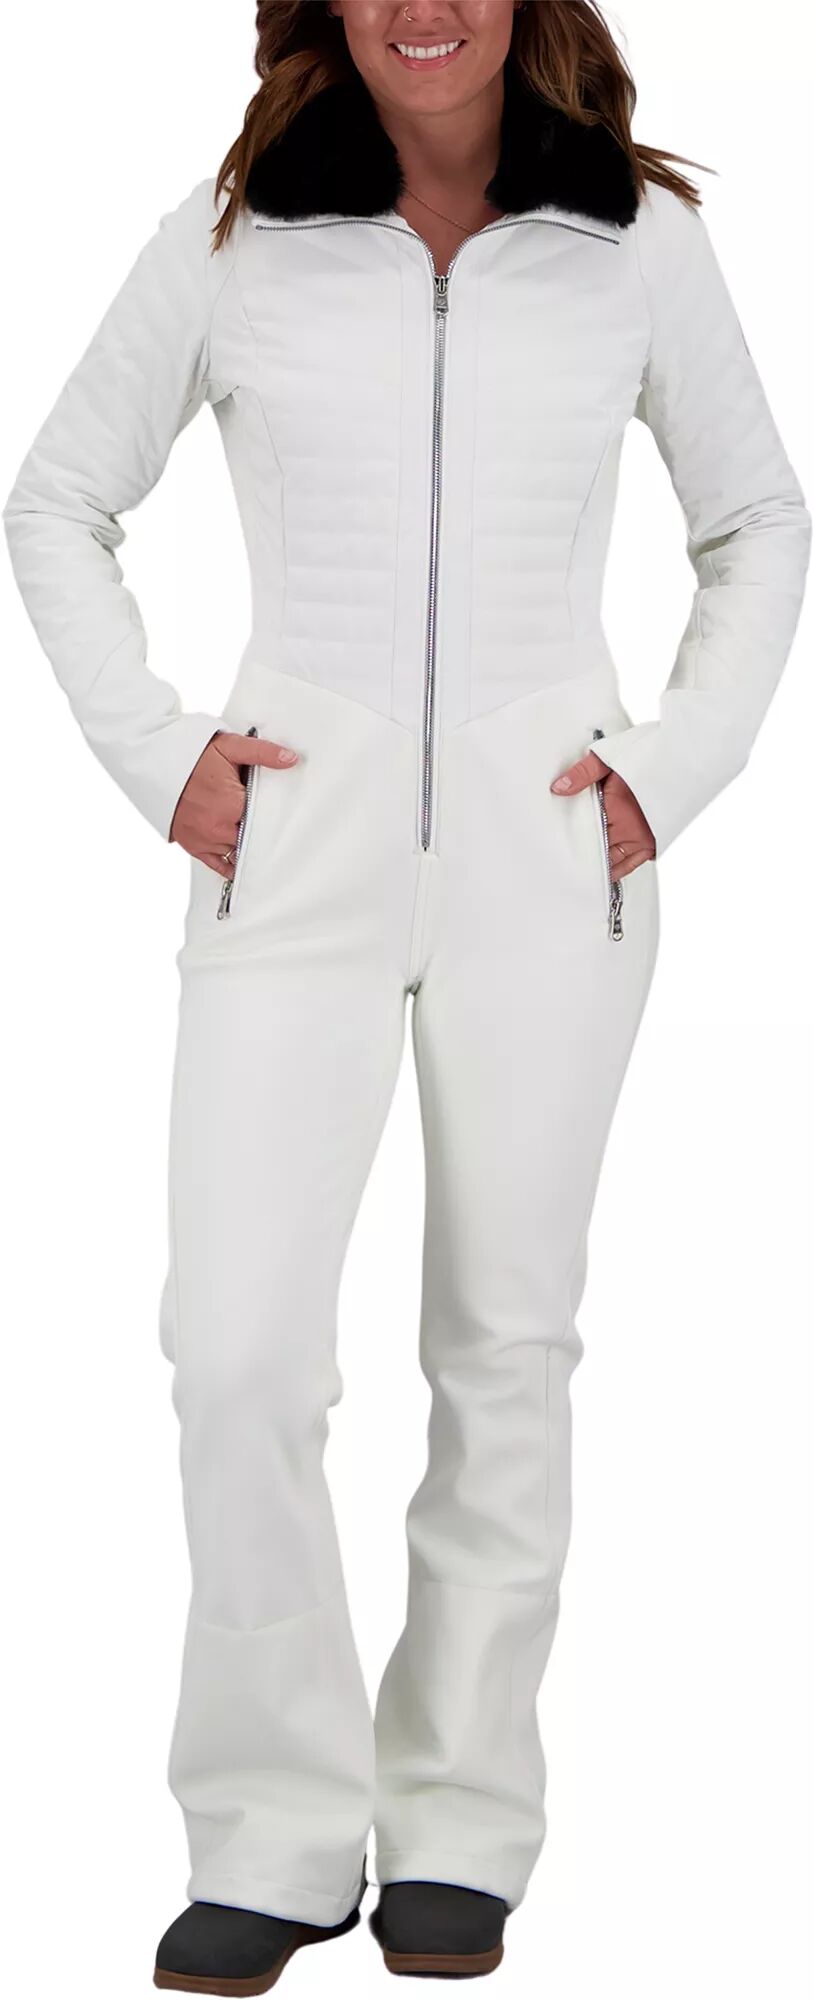 Photos - Ski Wear Obermeyer Women's Katze Winter Suit, Size 10, White 20obewwktzstxxxxxapo